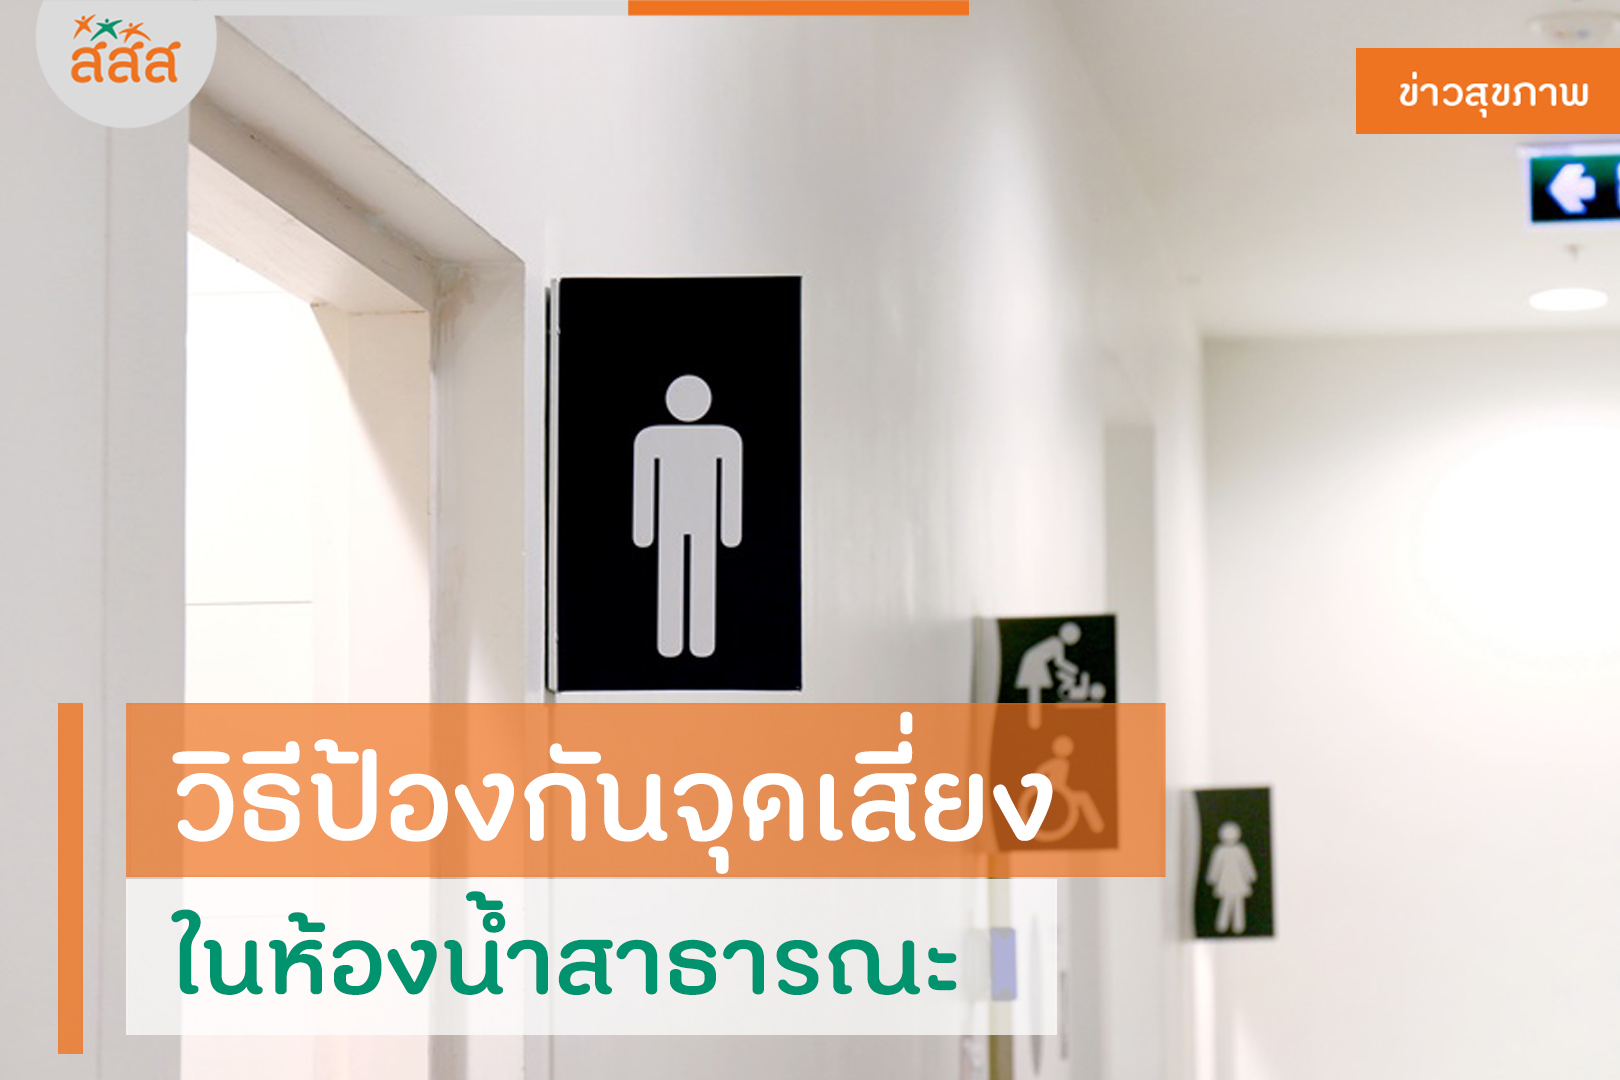 วิธีป้องกันจุดเสี่ยง ในห้องน้ำสาธารณะ thaihealth